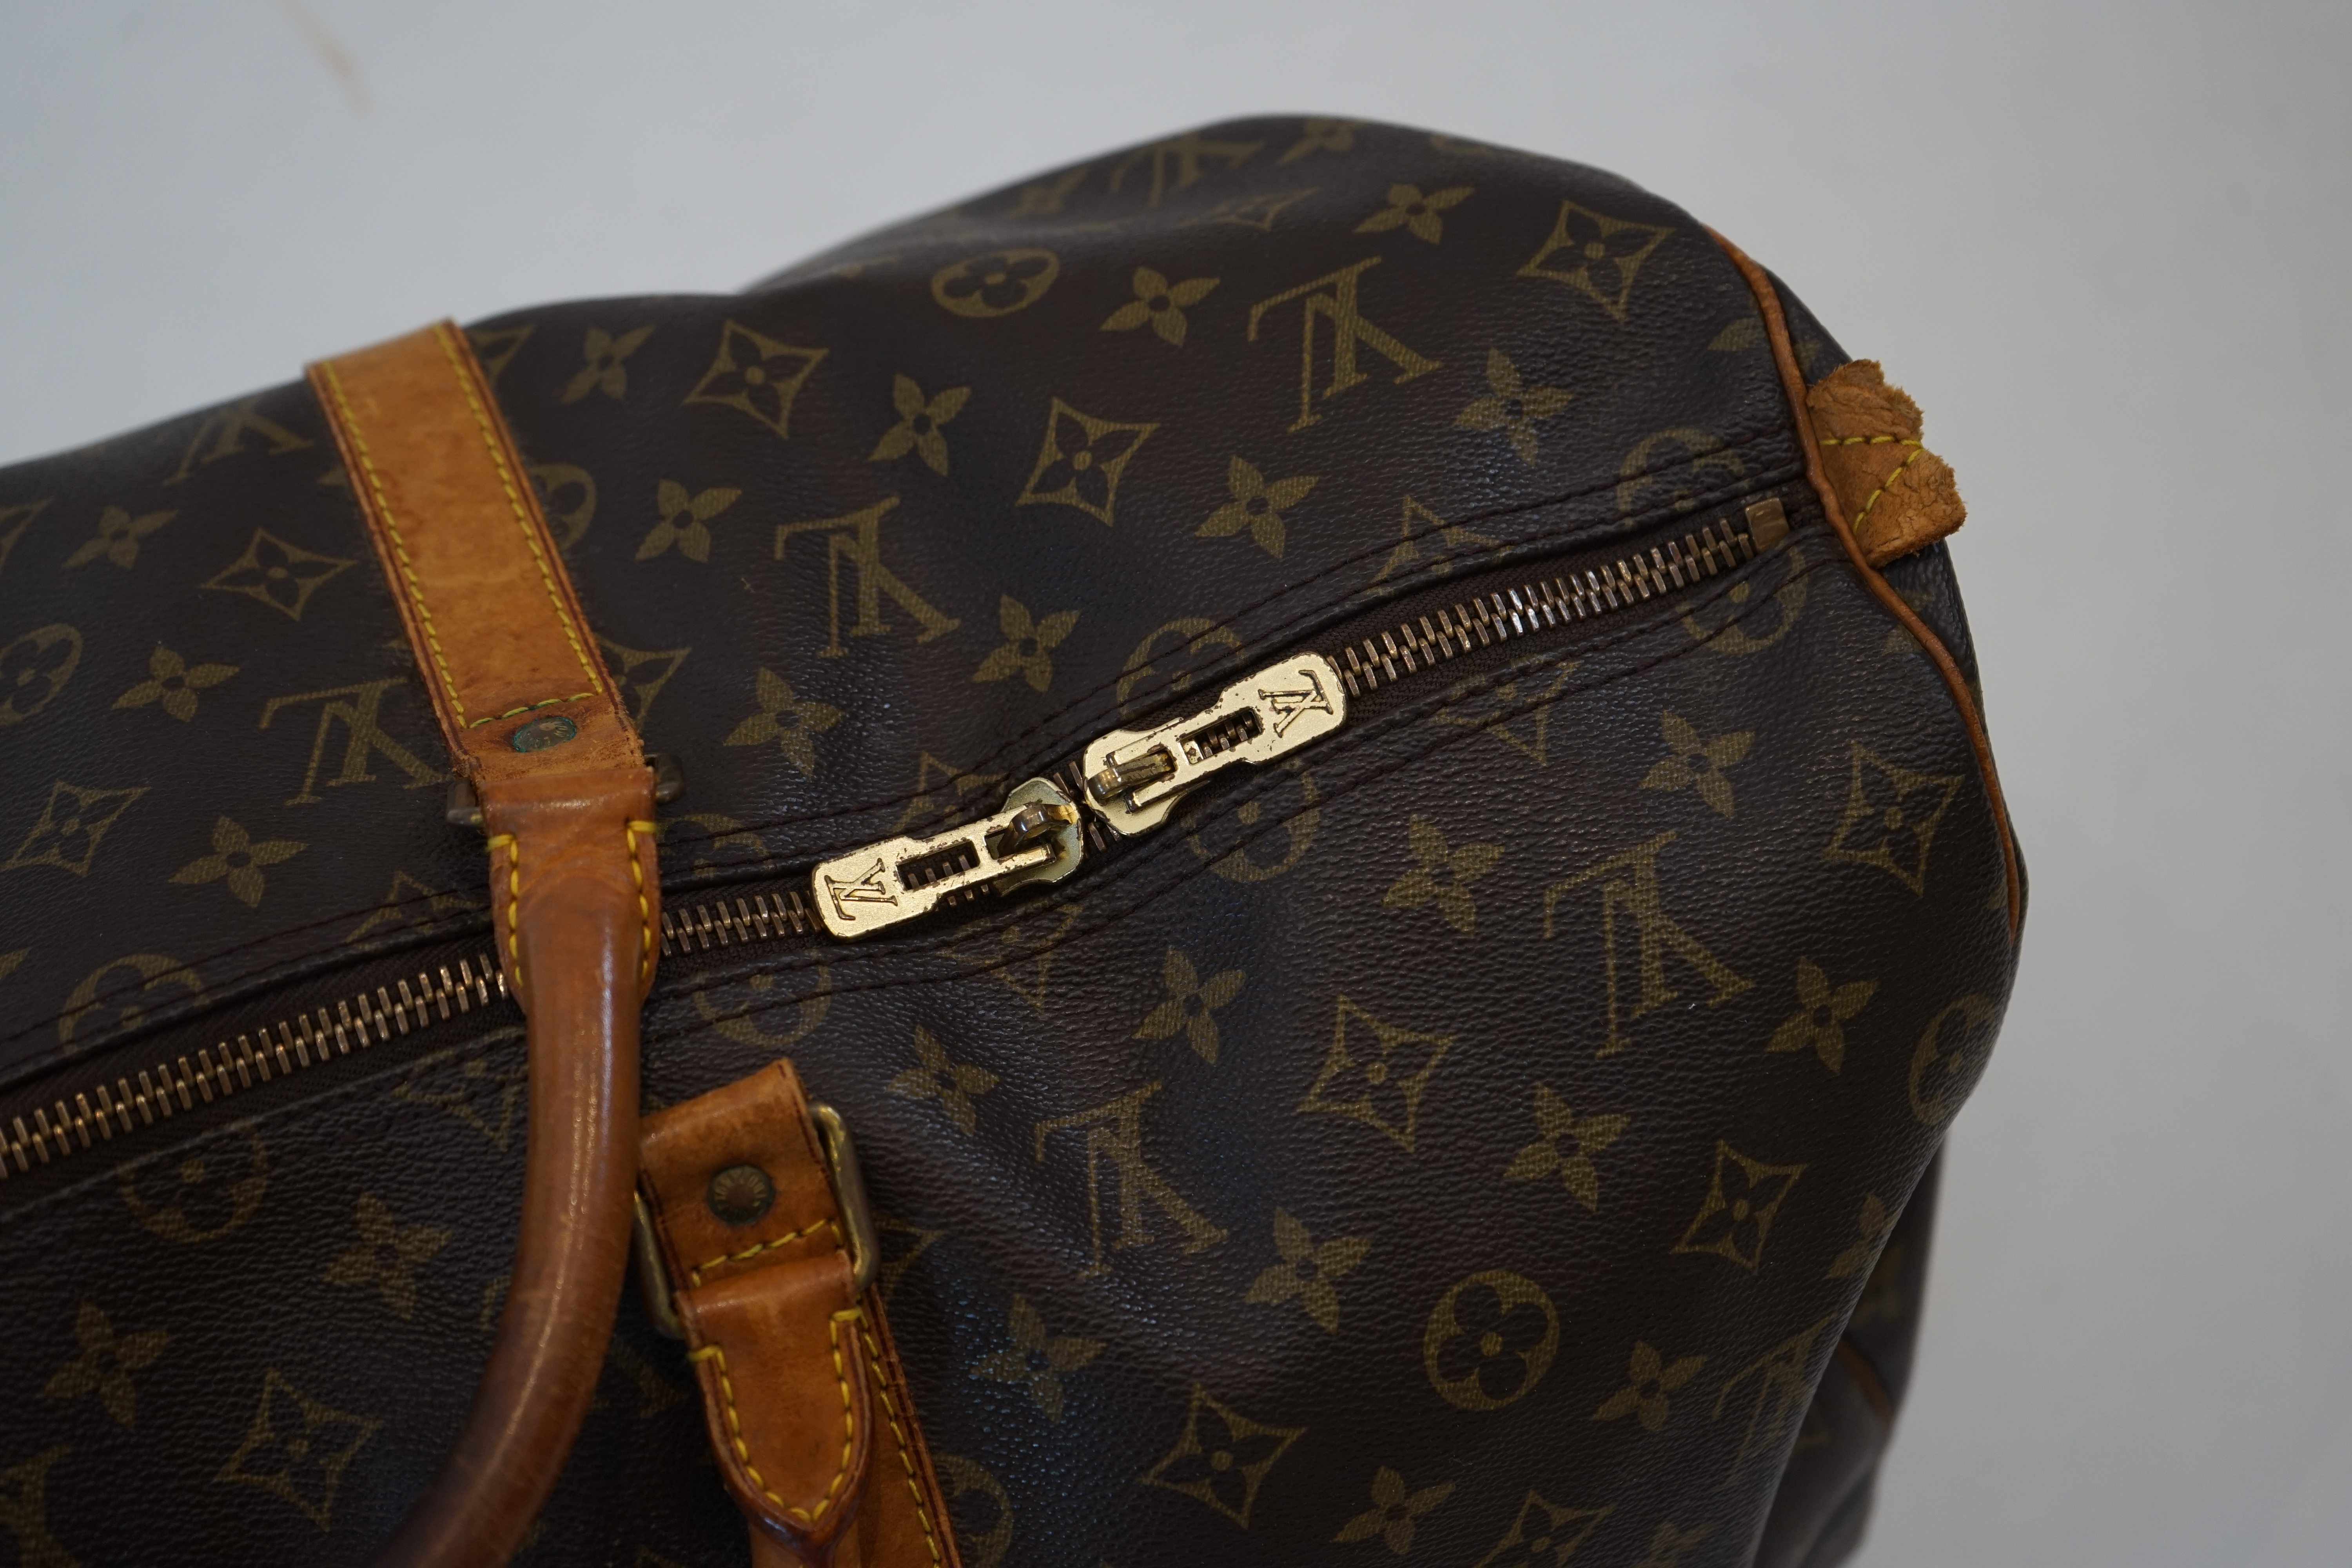 A Louis Vuitton Speedy 40 bag width 22cm, length 51cm, height 28cm